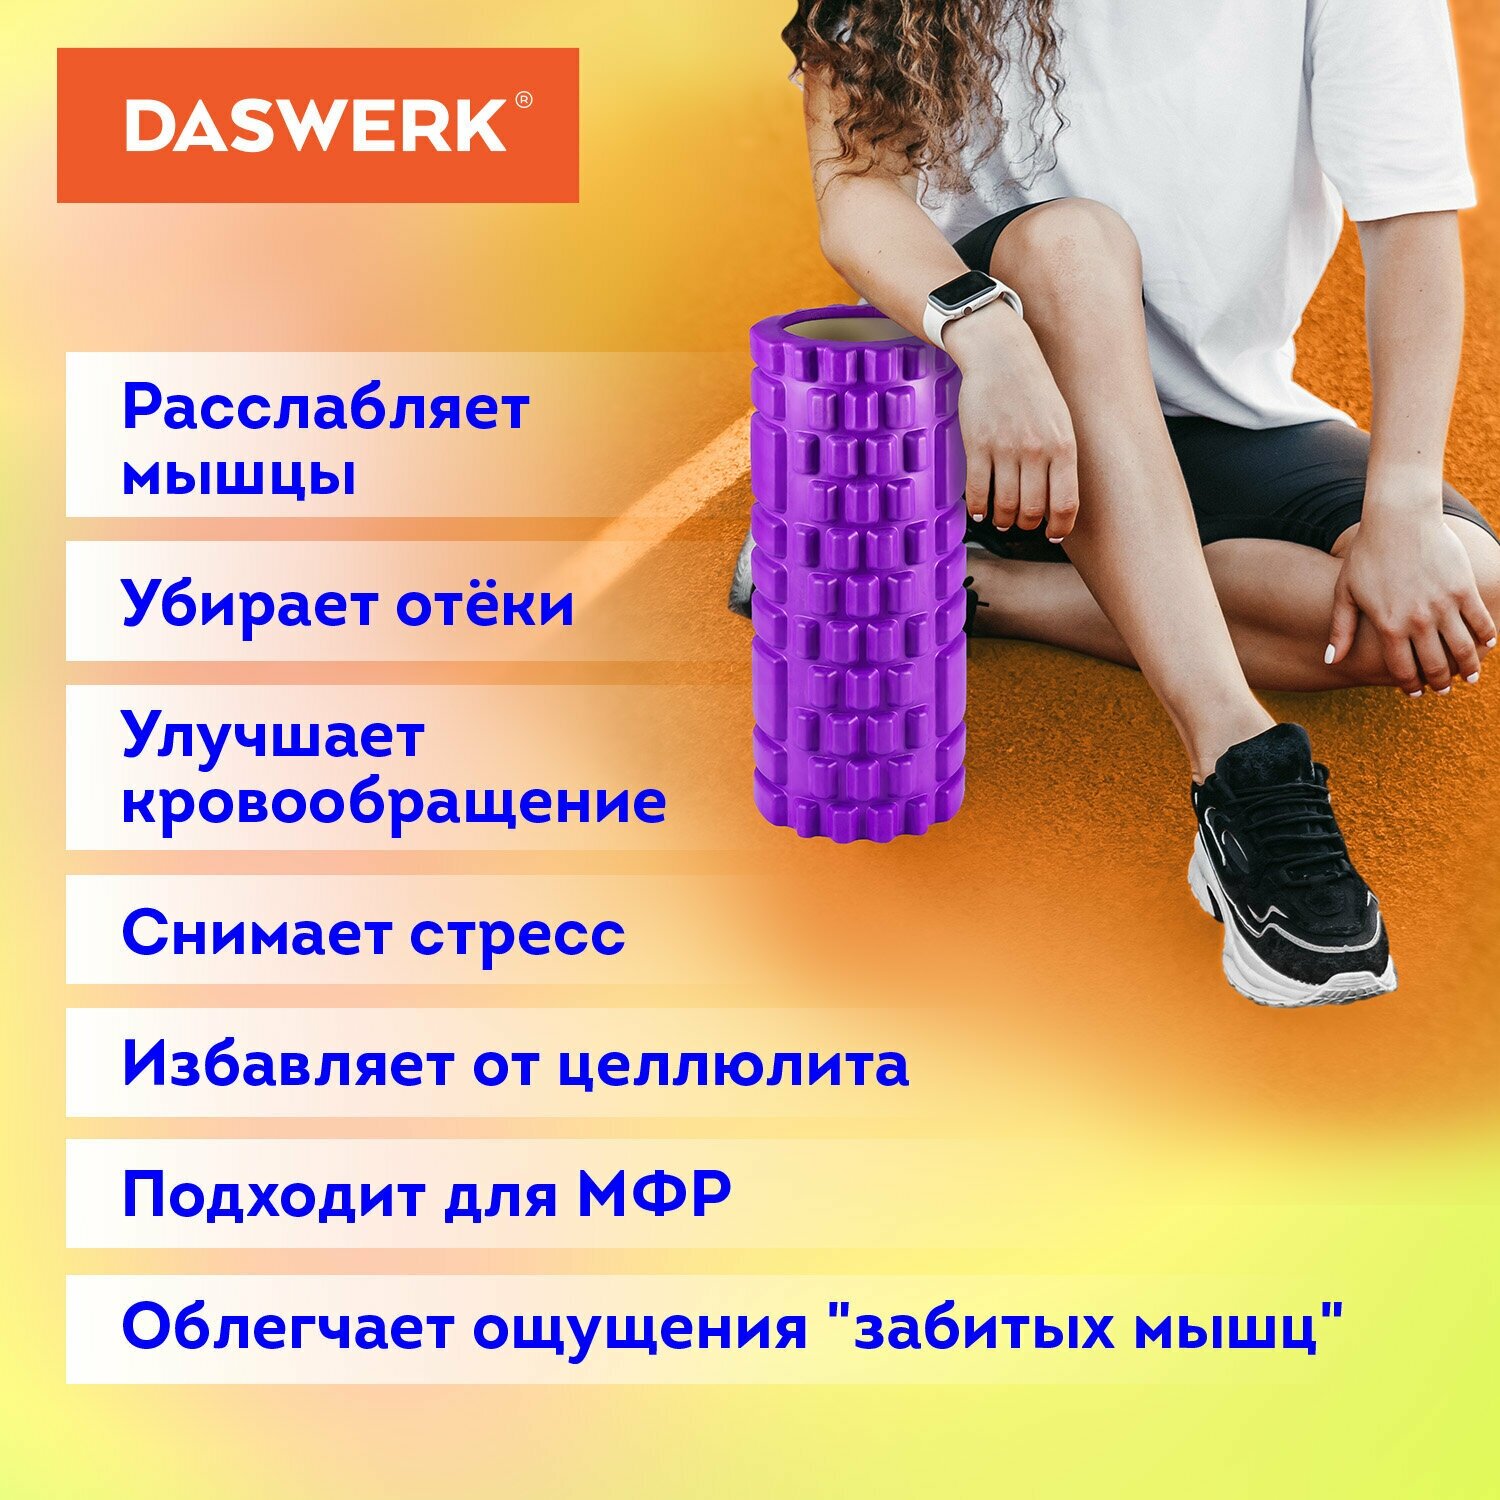 Ролик массажный для йоги, фитнеса, пилатеса, валик массажный 26*8 см, Eva, фиолетовый, с выступами, Daswerk, 680020